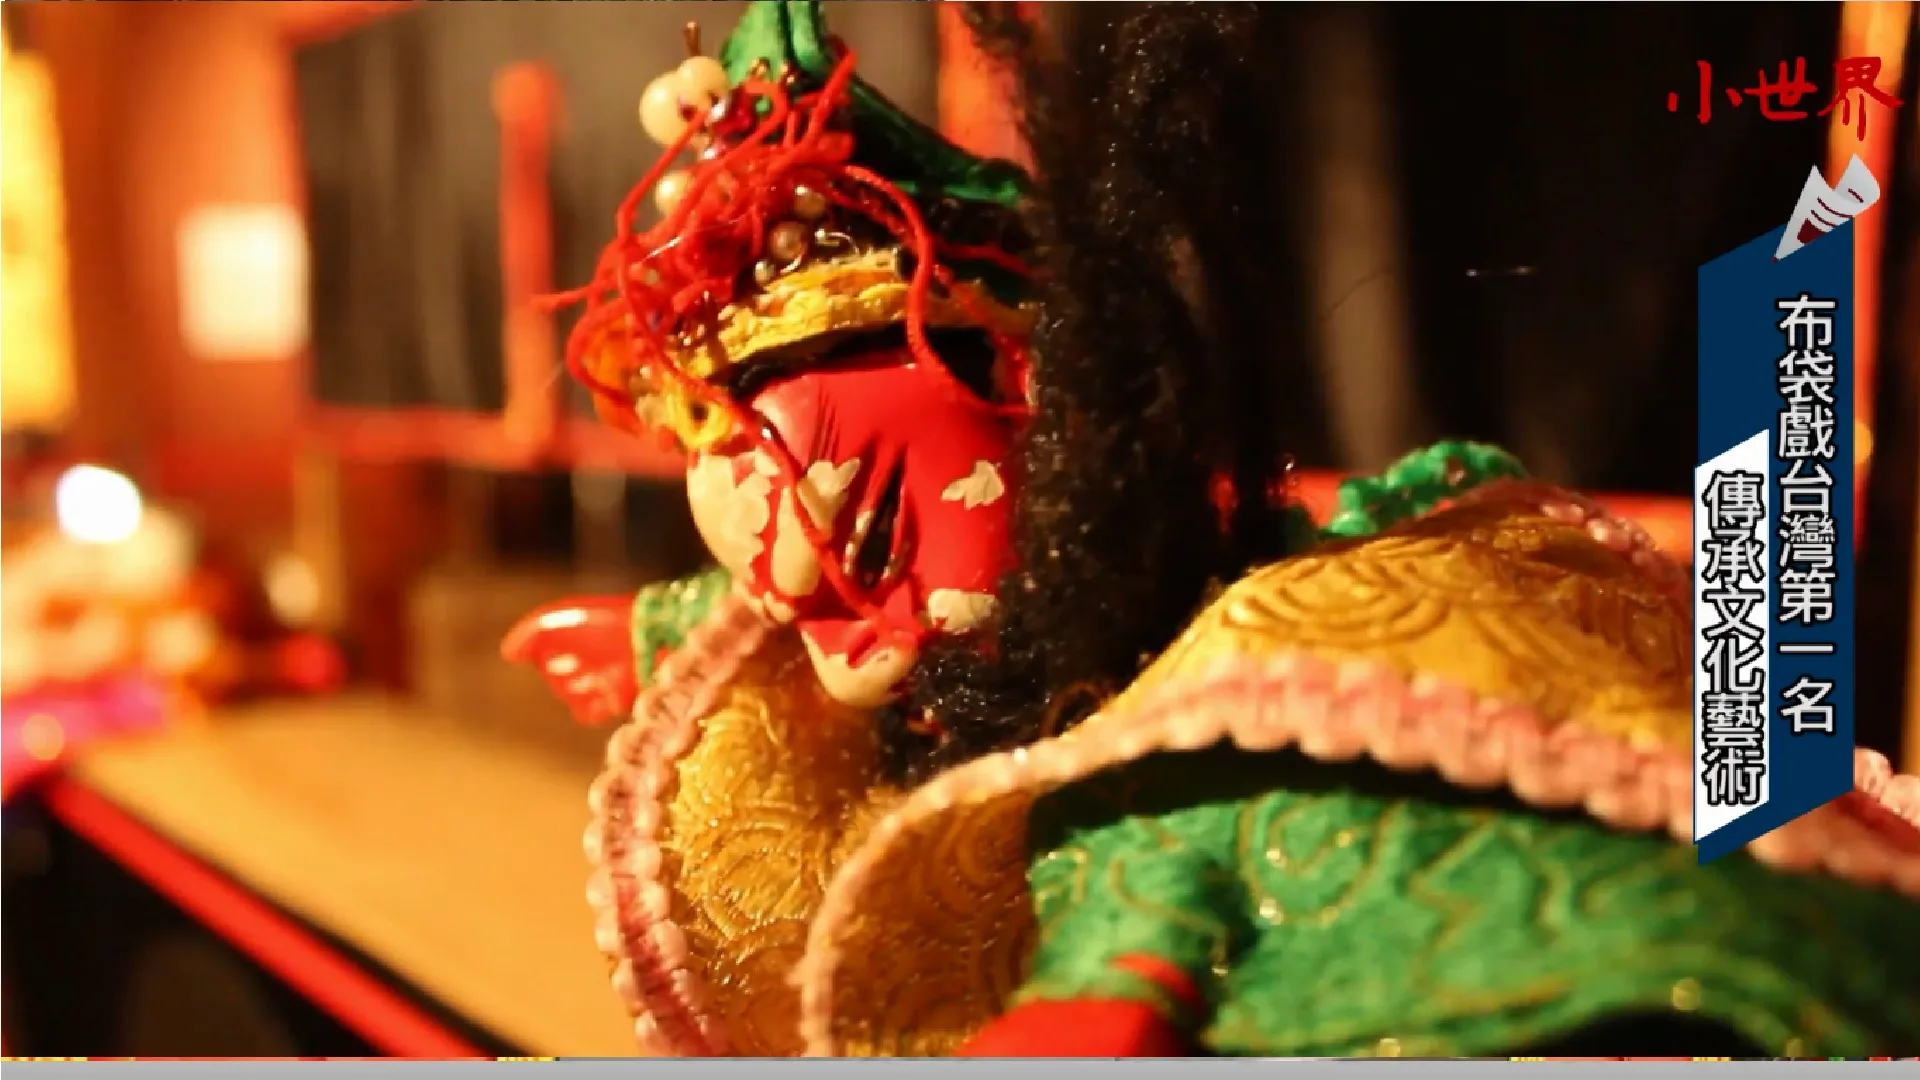 布袋戲台灣第一 傳承文化藝術